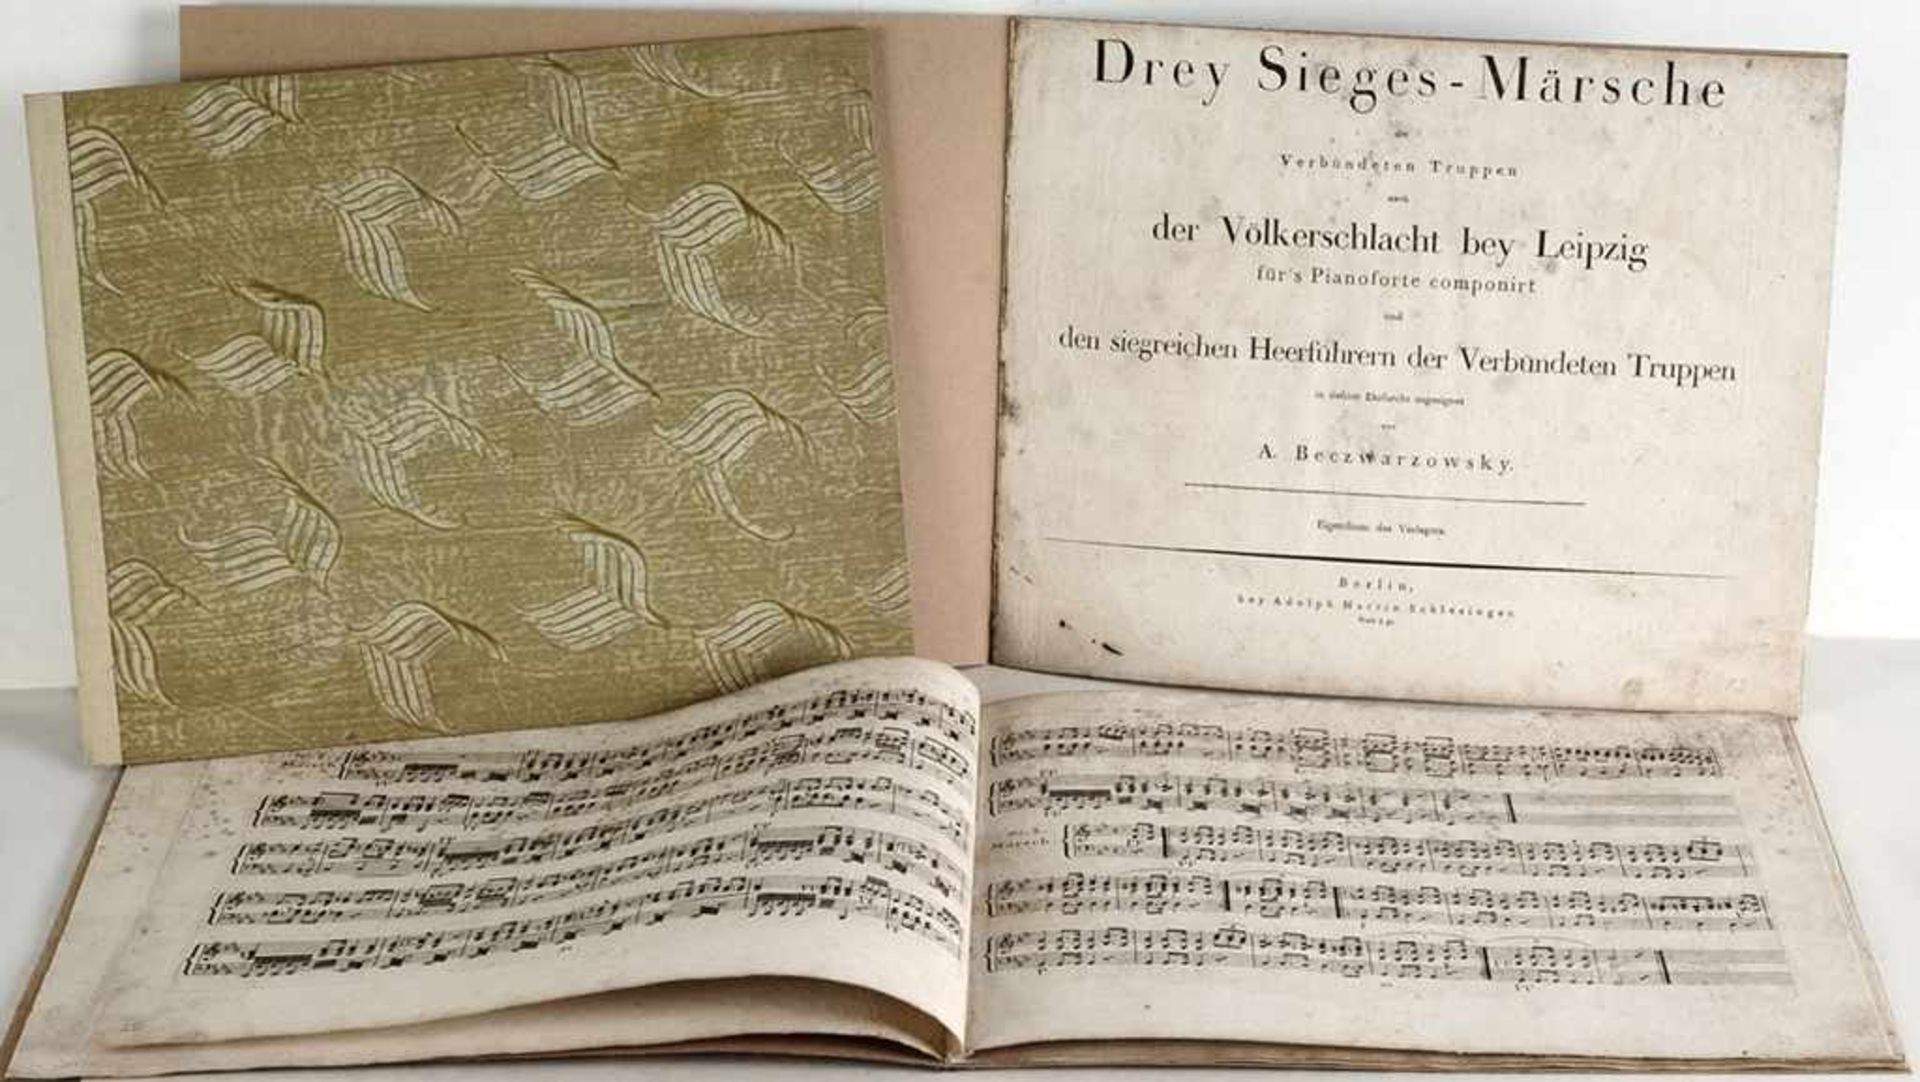 Drei Partituren 19. JahrhundertAntonin Beczwarzowsky (1754-1823): "Drey Sieges-Märsche der